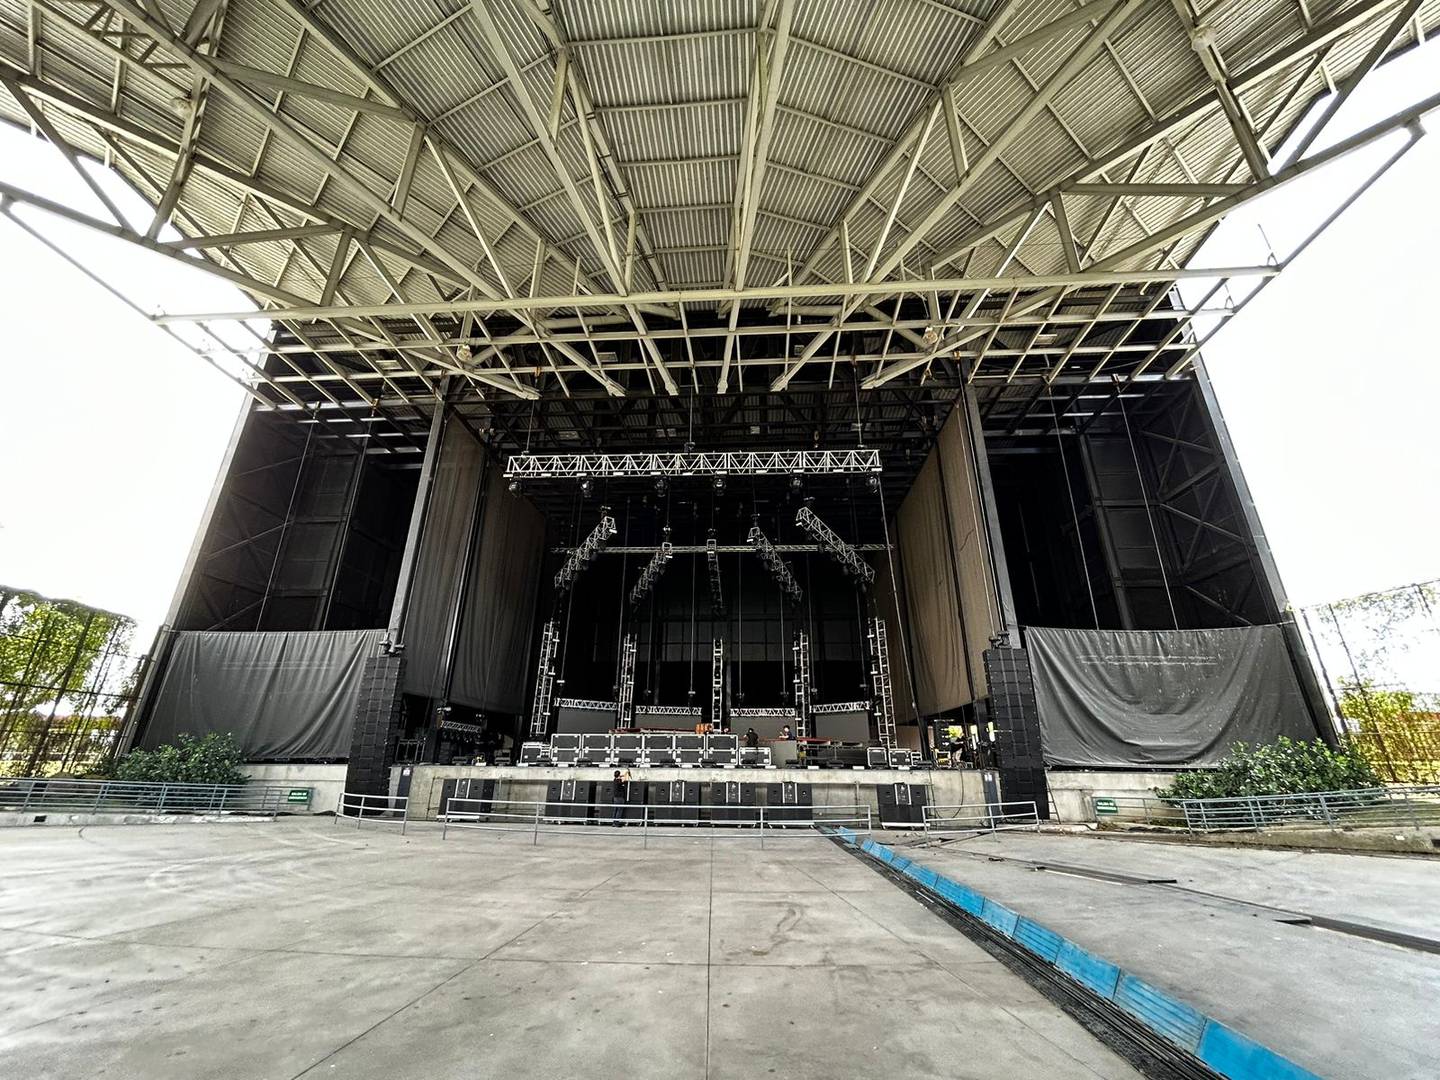 Este es el escenario en el que CNCO se presentará el jueves, en su último concierto en Costa Rica. Cortesía.